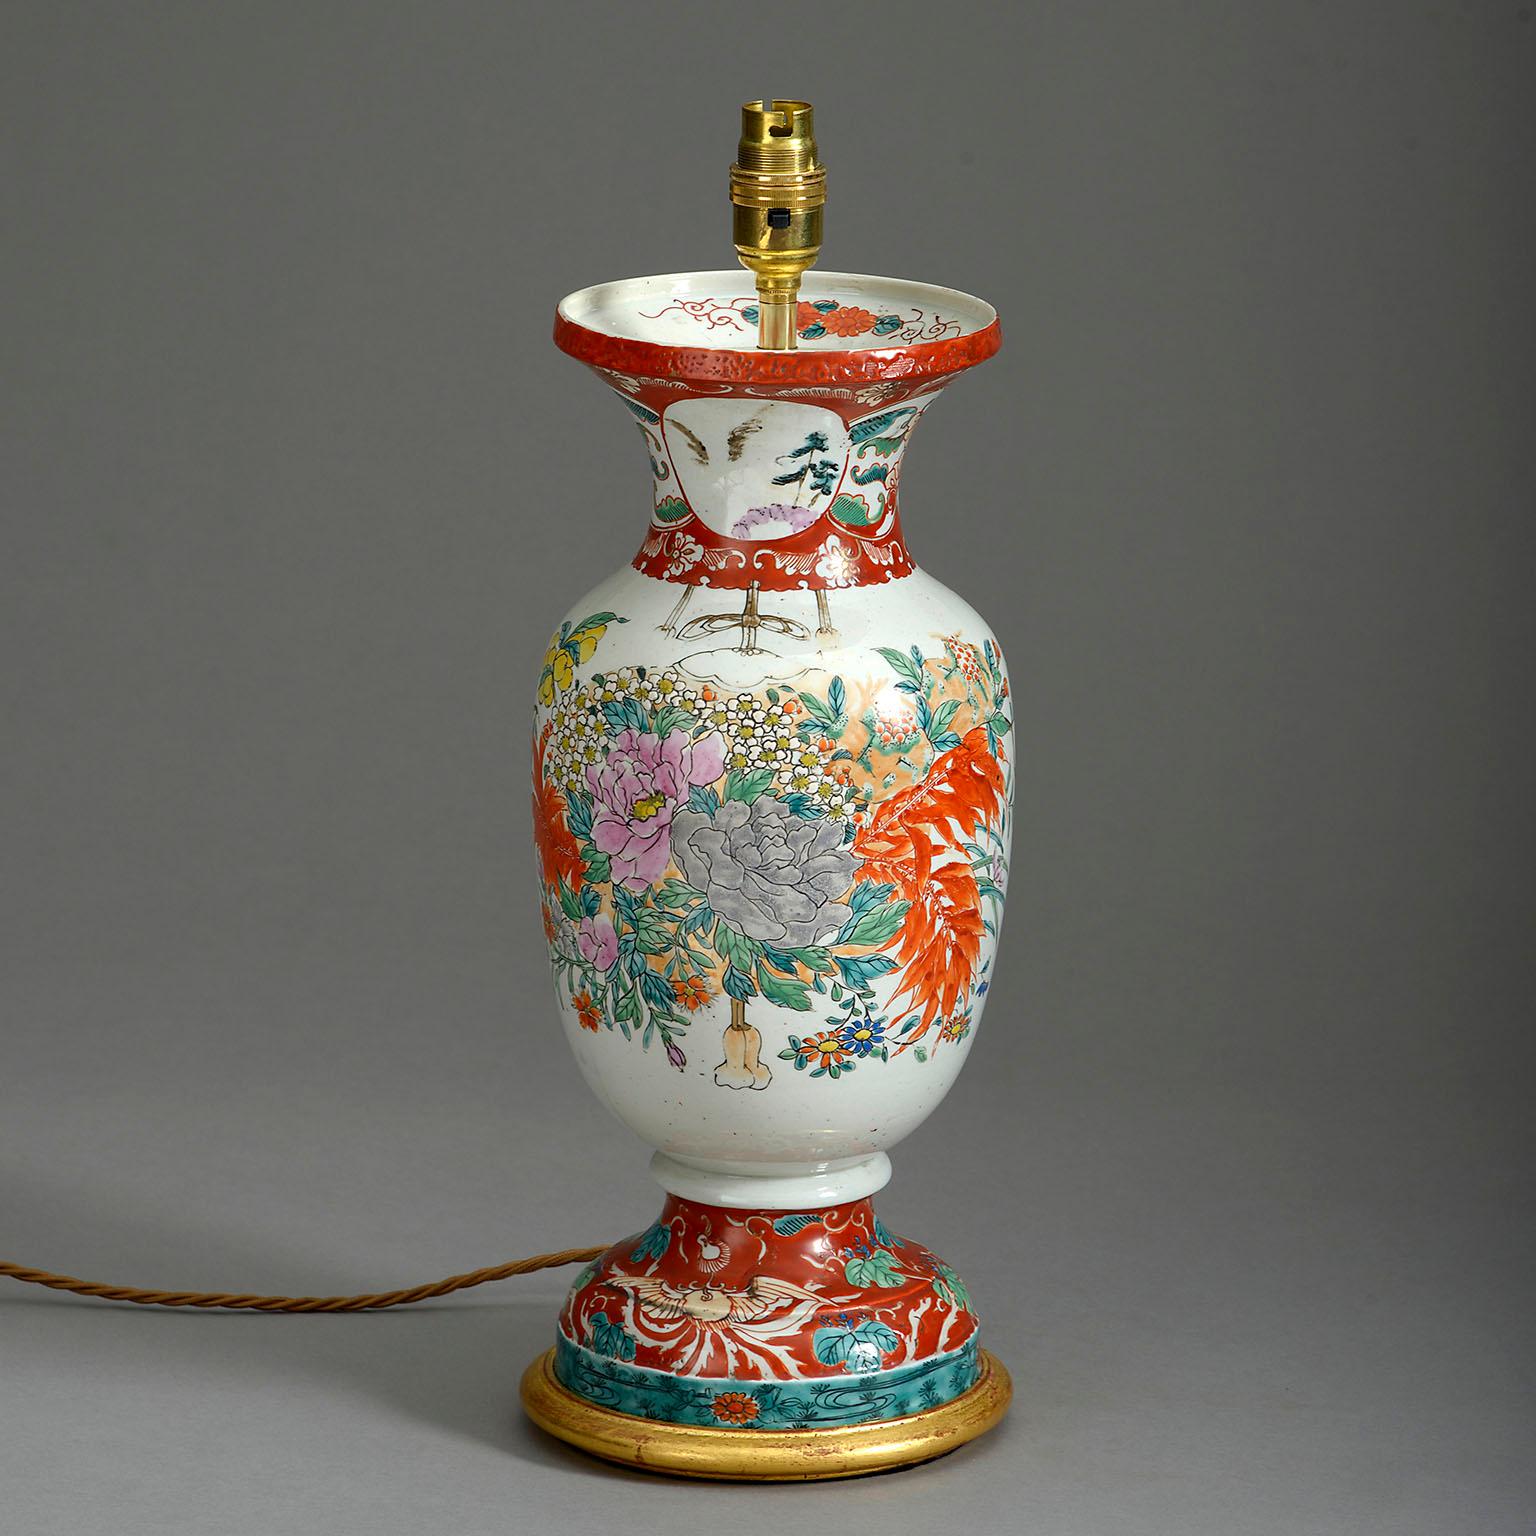 Vase en porcelaine Kutani de la fin du XIXe siècle, période Meiji, à décor floral. Monté comme une lampe de table sur une base en bois doré tourné.

Les dimensions se rapportent uniquement aux pièces en porcelaine et en bois doré tourné.

Câblé